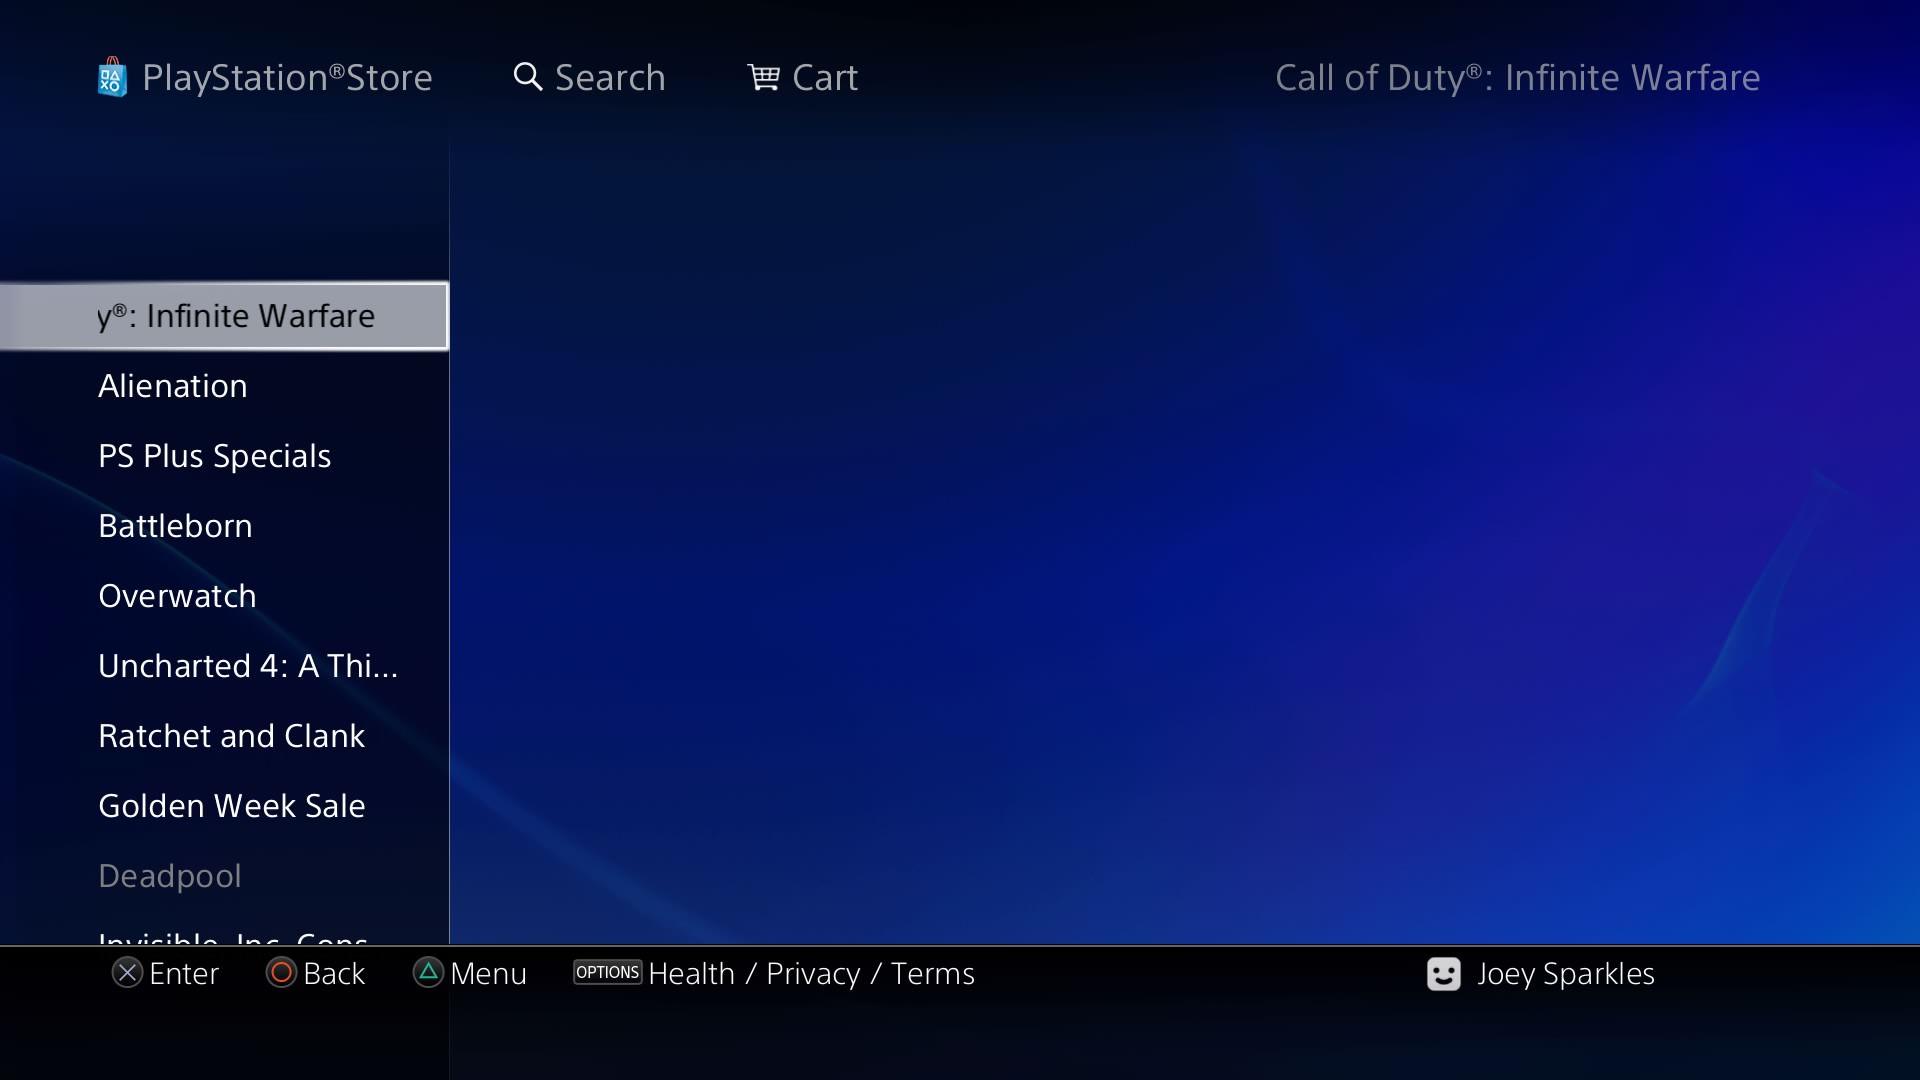 تصویری از سایت فروشگاه پلی استیشن آمریکا که احتمالا نام قسمت جدید Call of Duty را لو می دهد